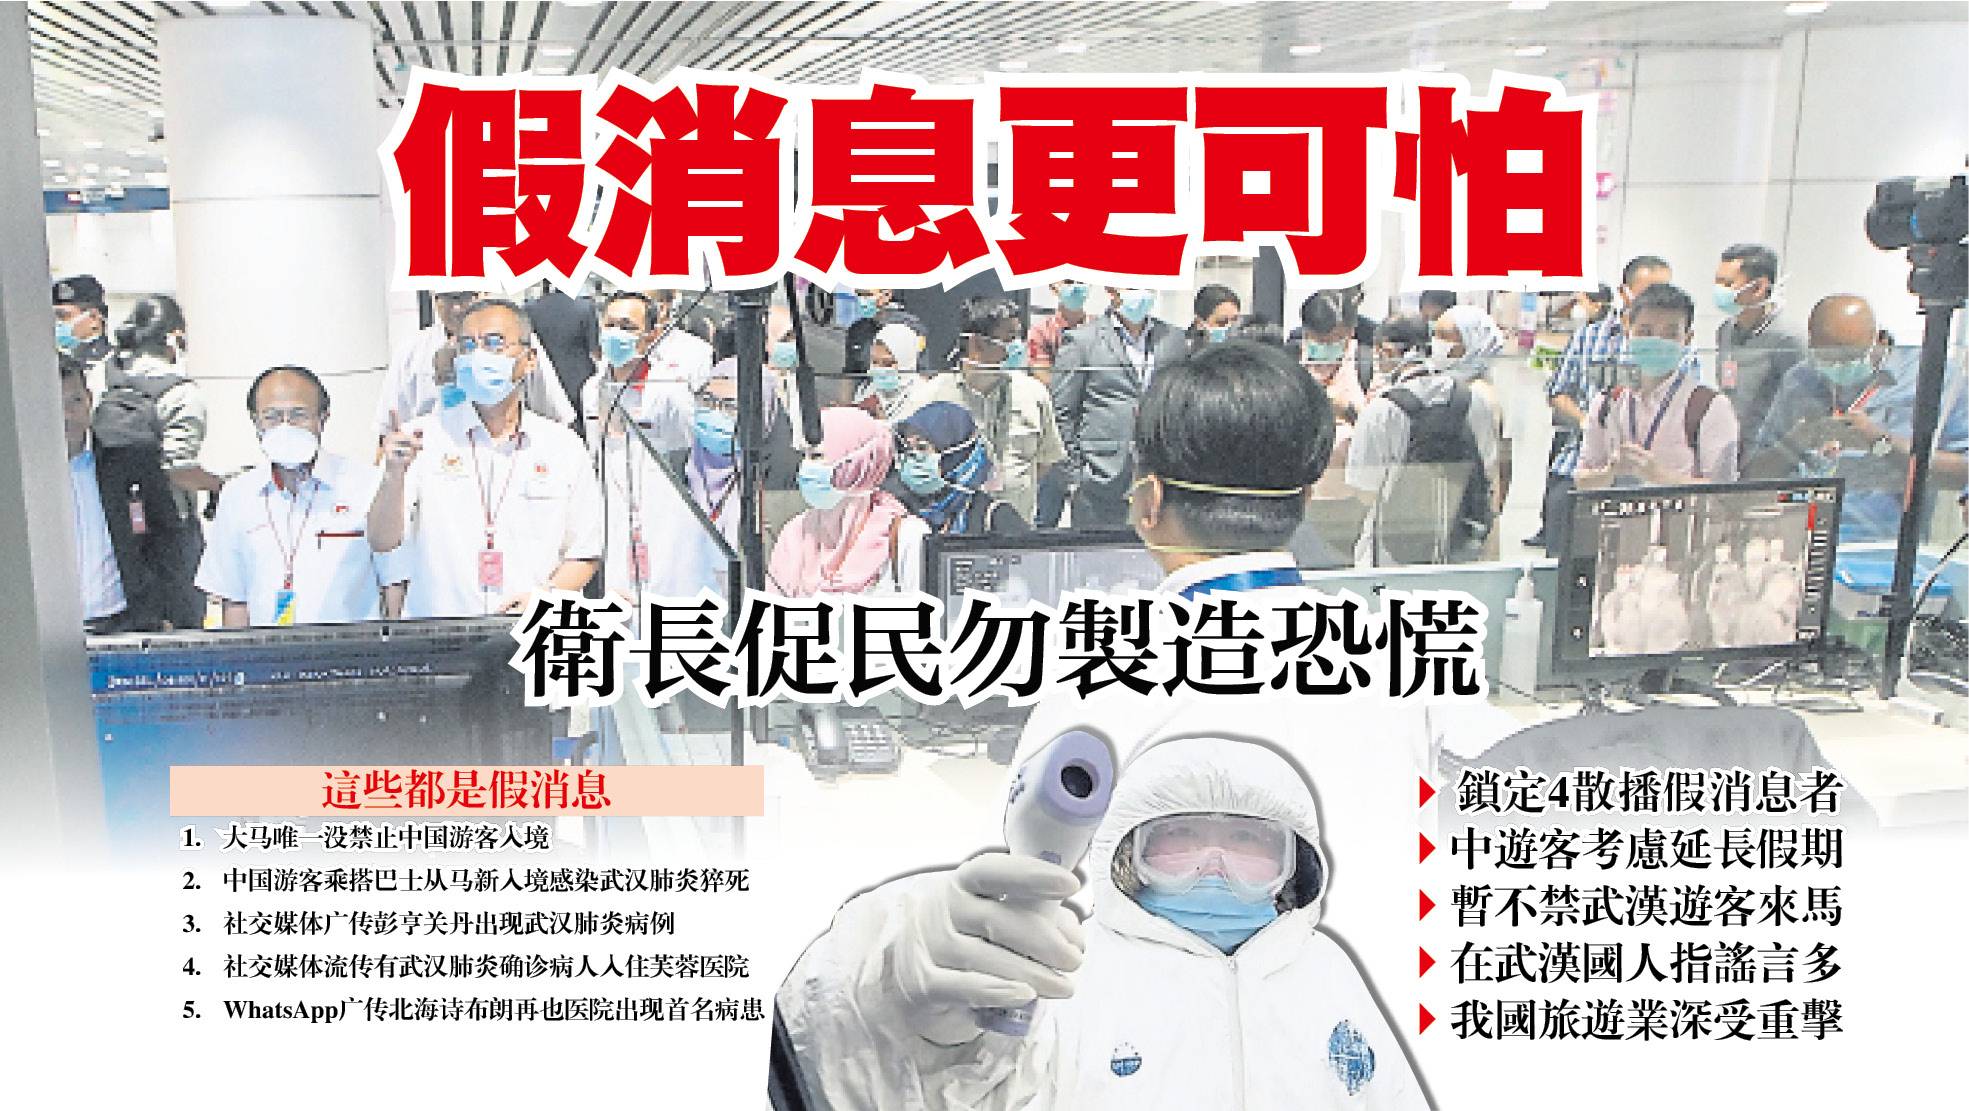 组图：北京疫情风险升高 市民排队接受检测 | COVID-19 | 中共病毒 | 新冠病毒 | 大纪元